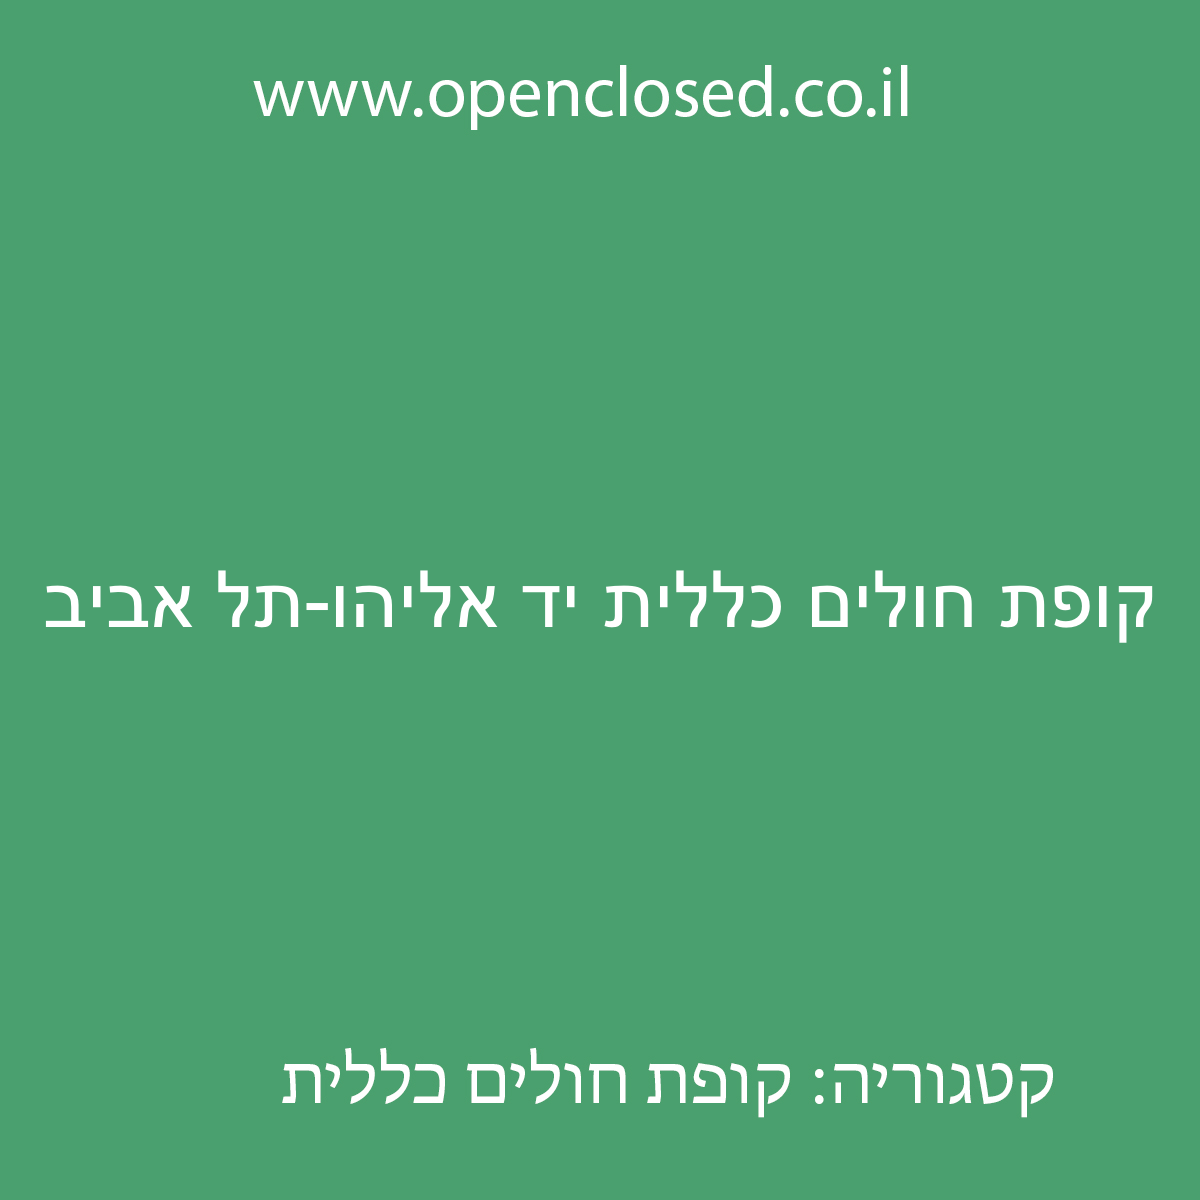 קופת חולים כללית יד אליהו-תל אביב